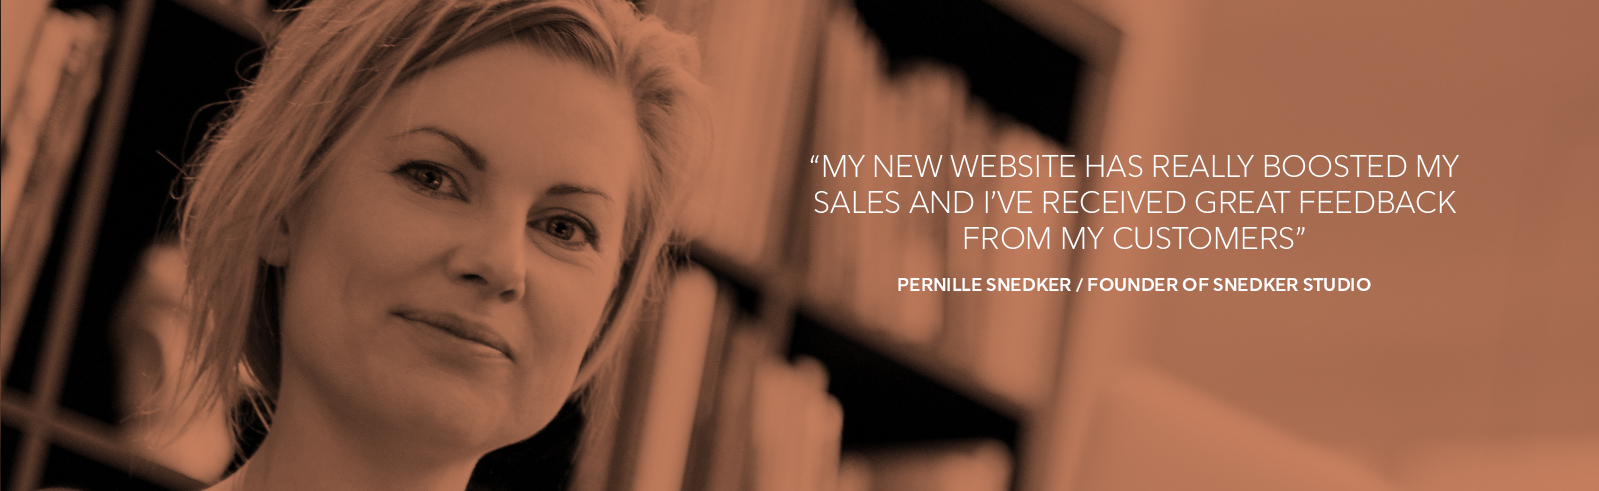 Pernille snedker, founder of snedker studio, snedker studio, best website builder, SMB, website